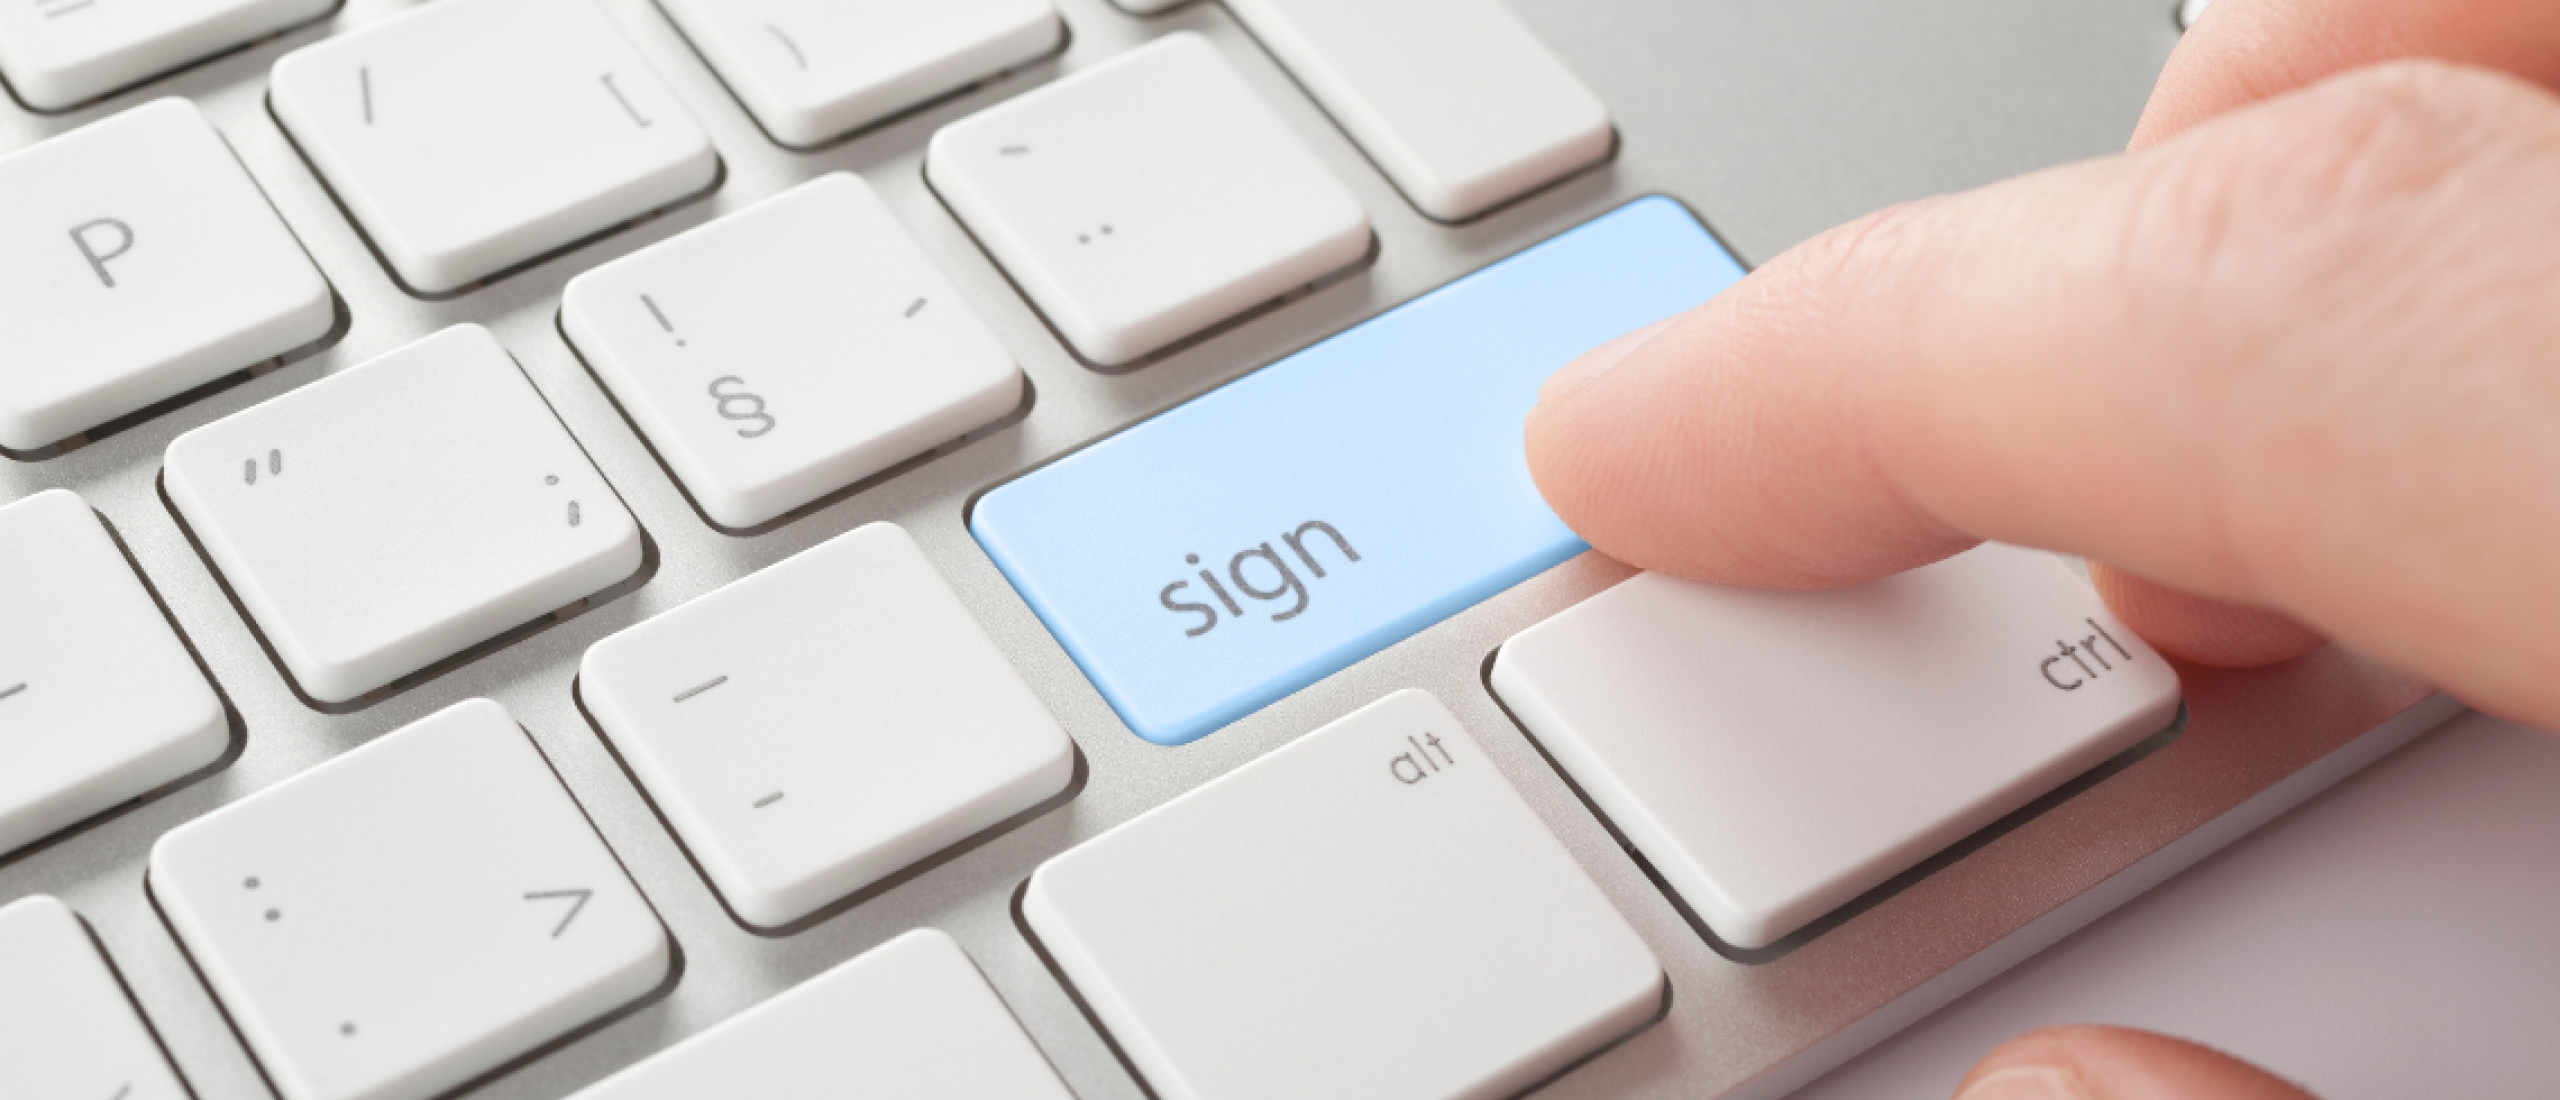 Is een digitale handtekening wel veilig?